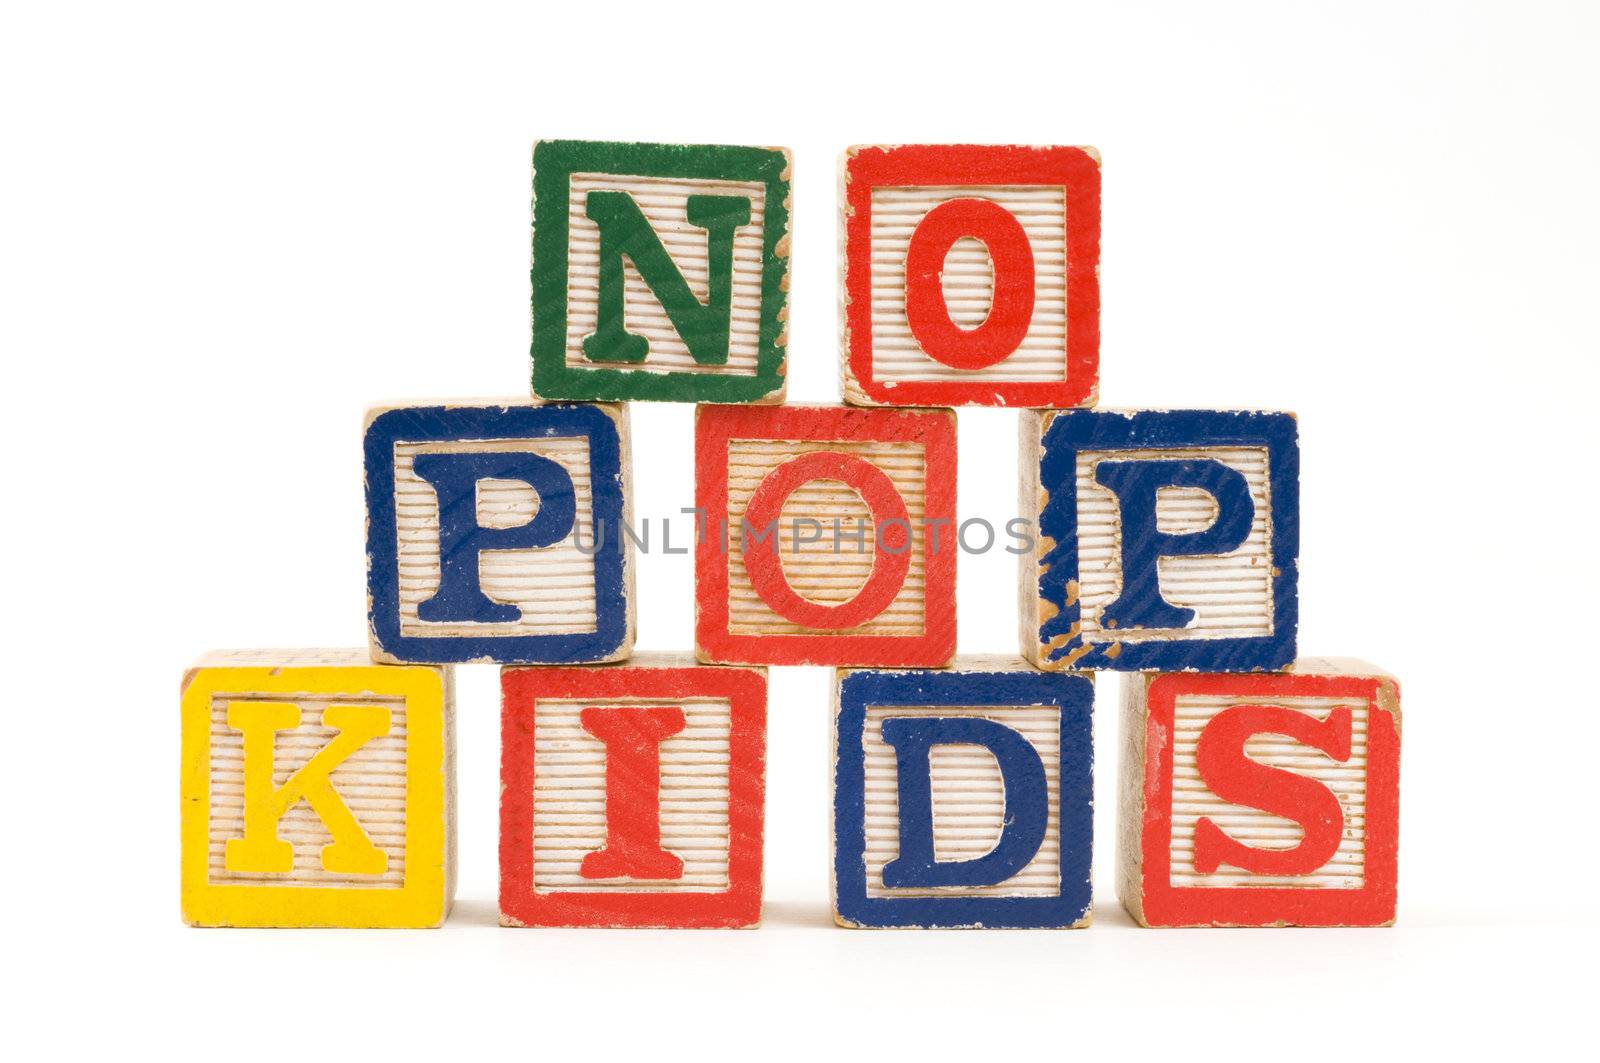 No Pop Kids by Gordo25